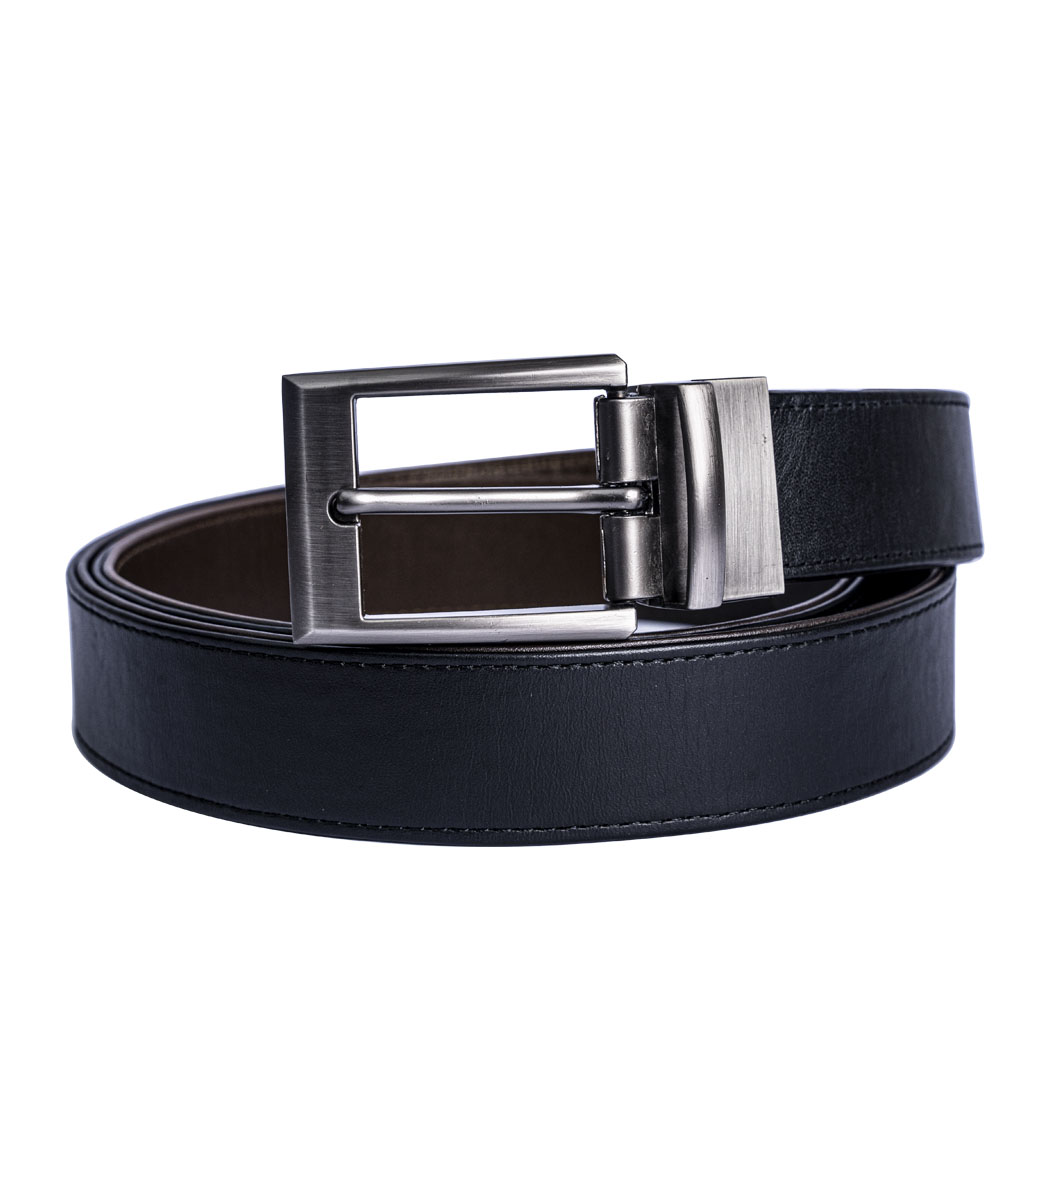 black formal belt for men hand stitched